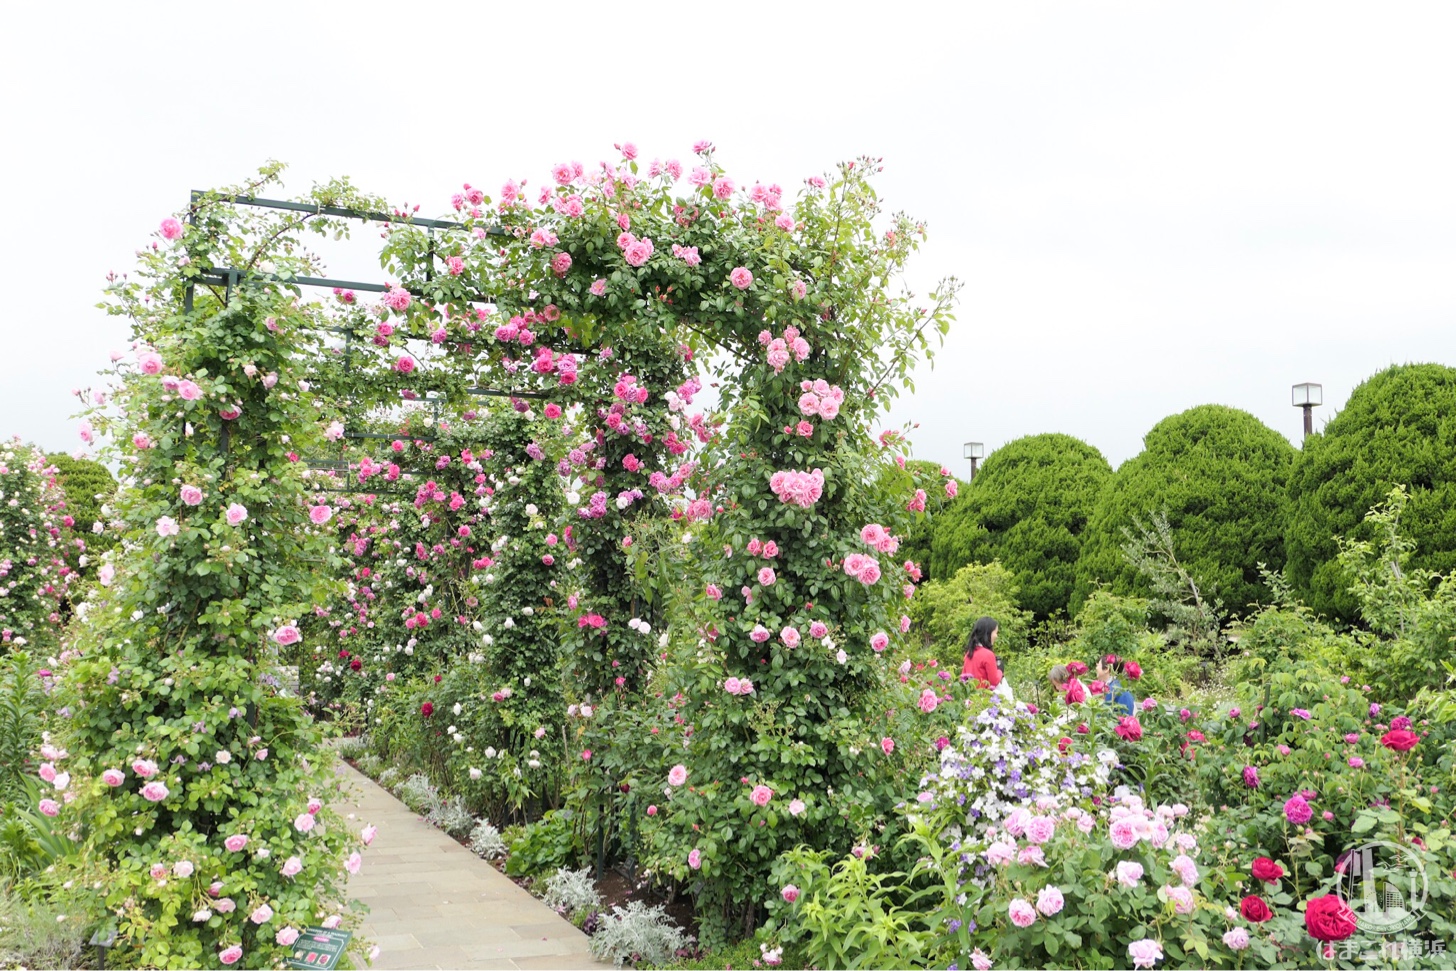 18年 港の見える丘公園のバラが見頃 ガーデンを染めるバラを撮ってきた はまこれ横浜